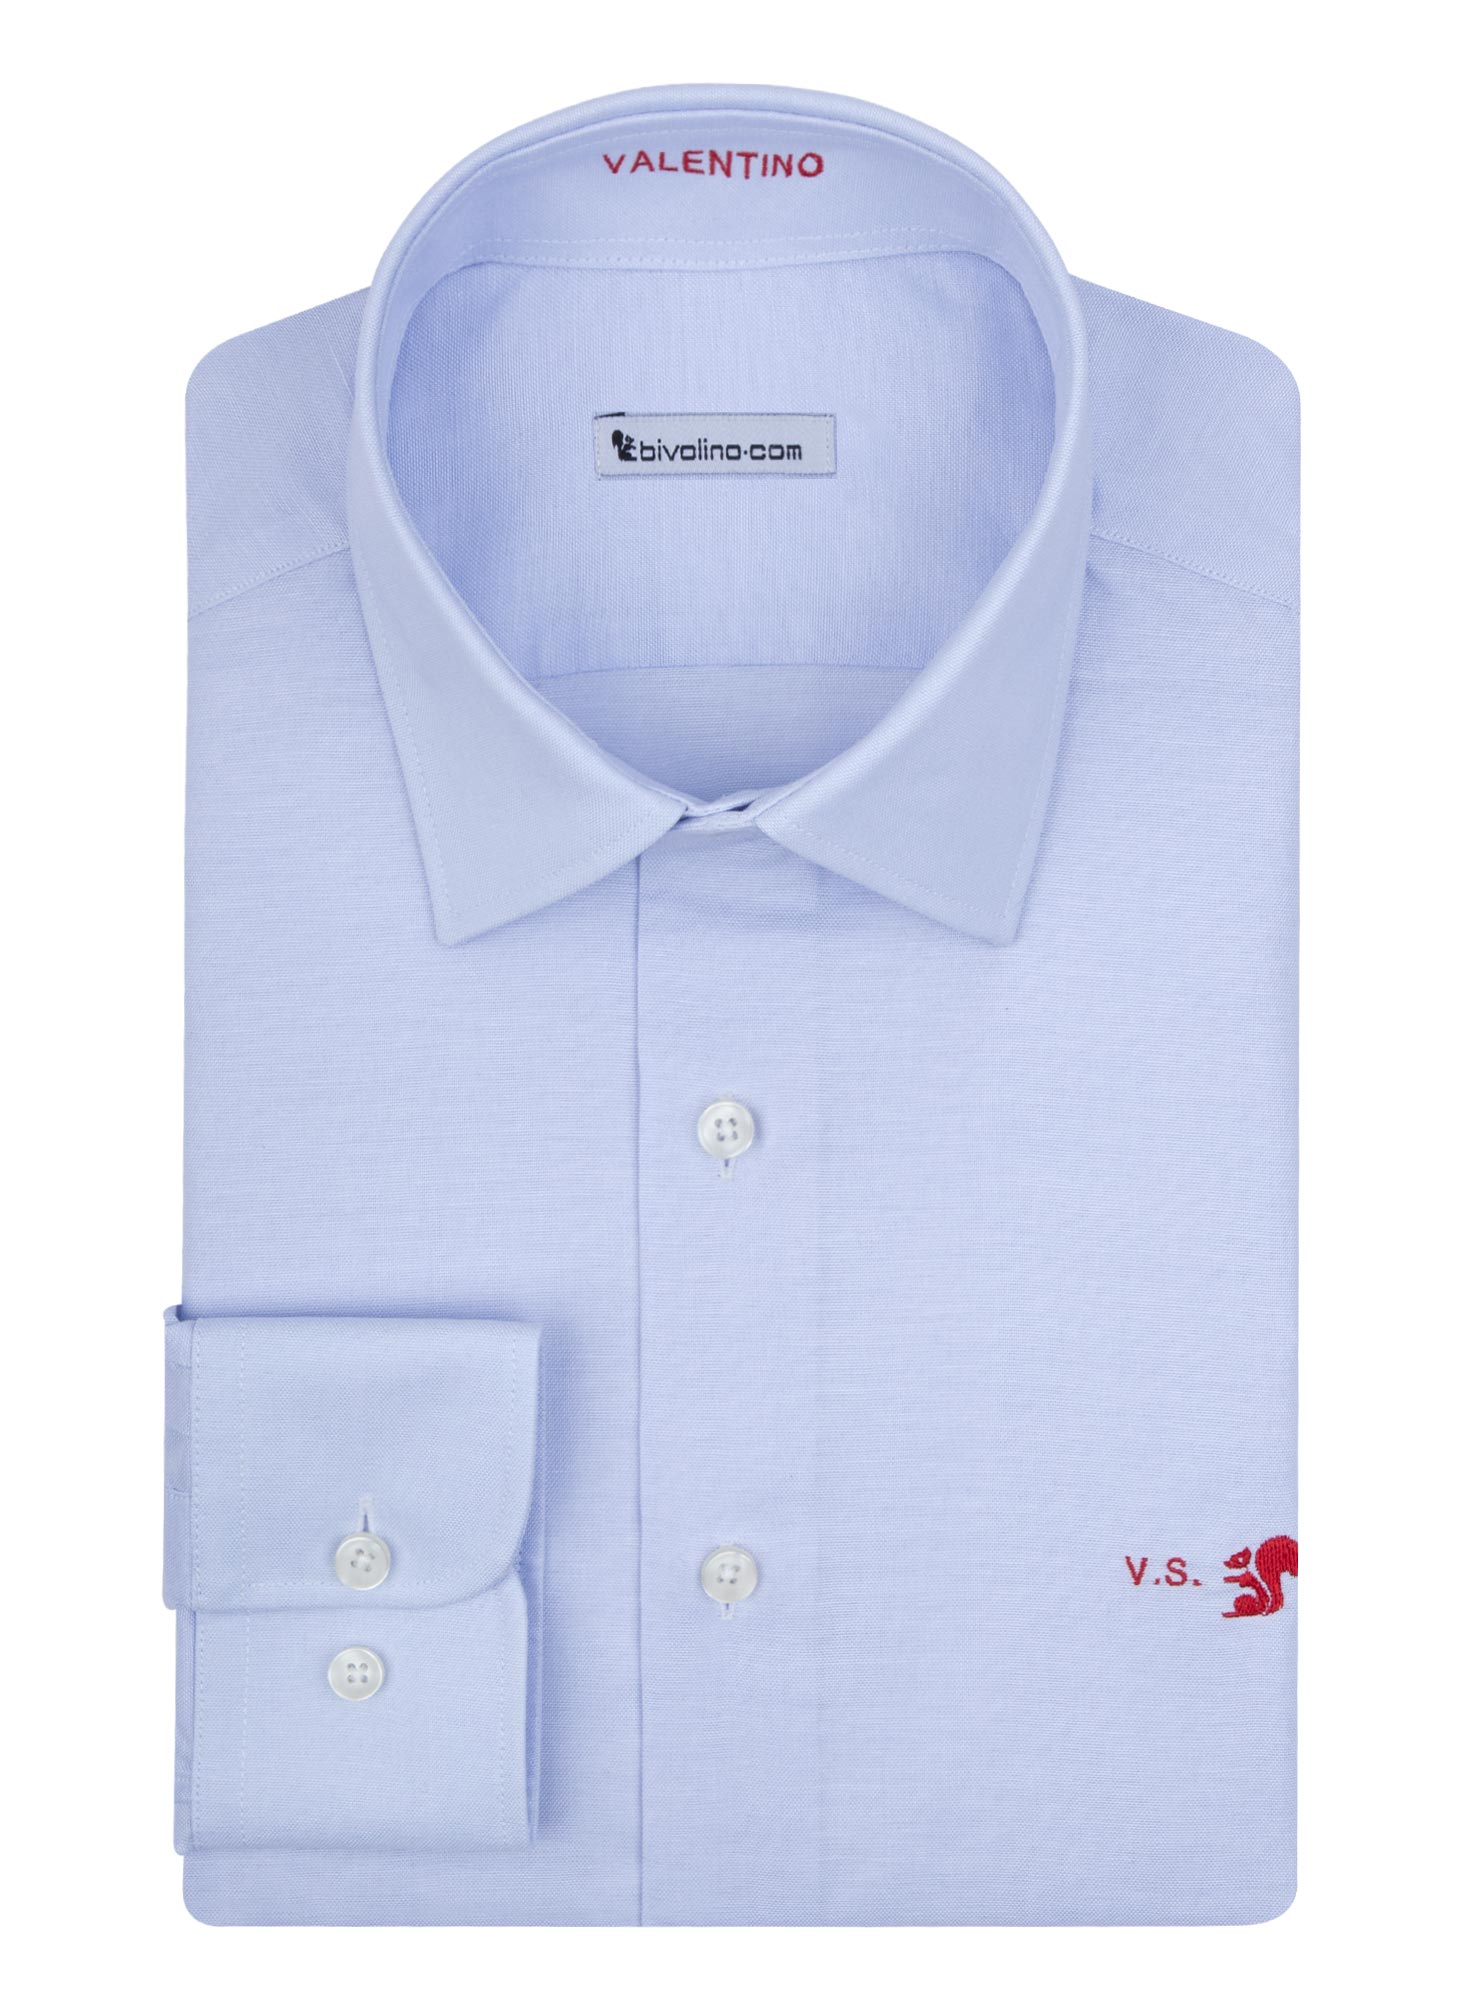 VILLACIDRO - Cuna Pinpoint azul camisa de hombre - GADA 2